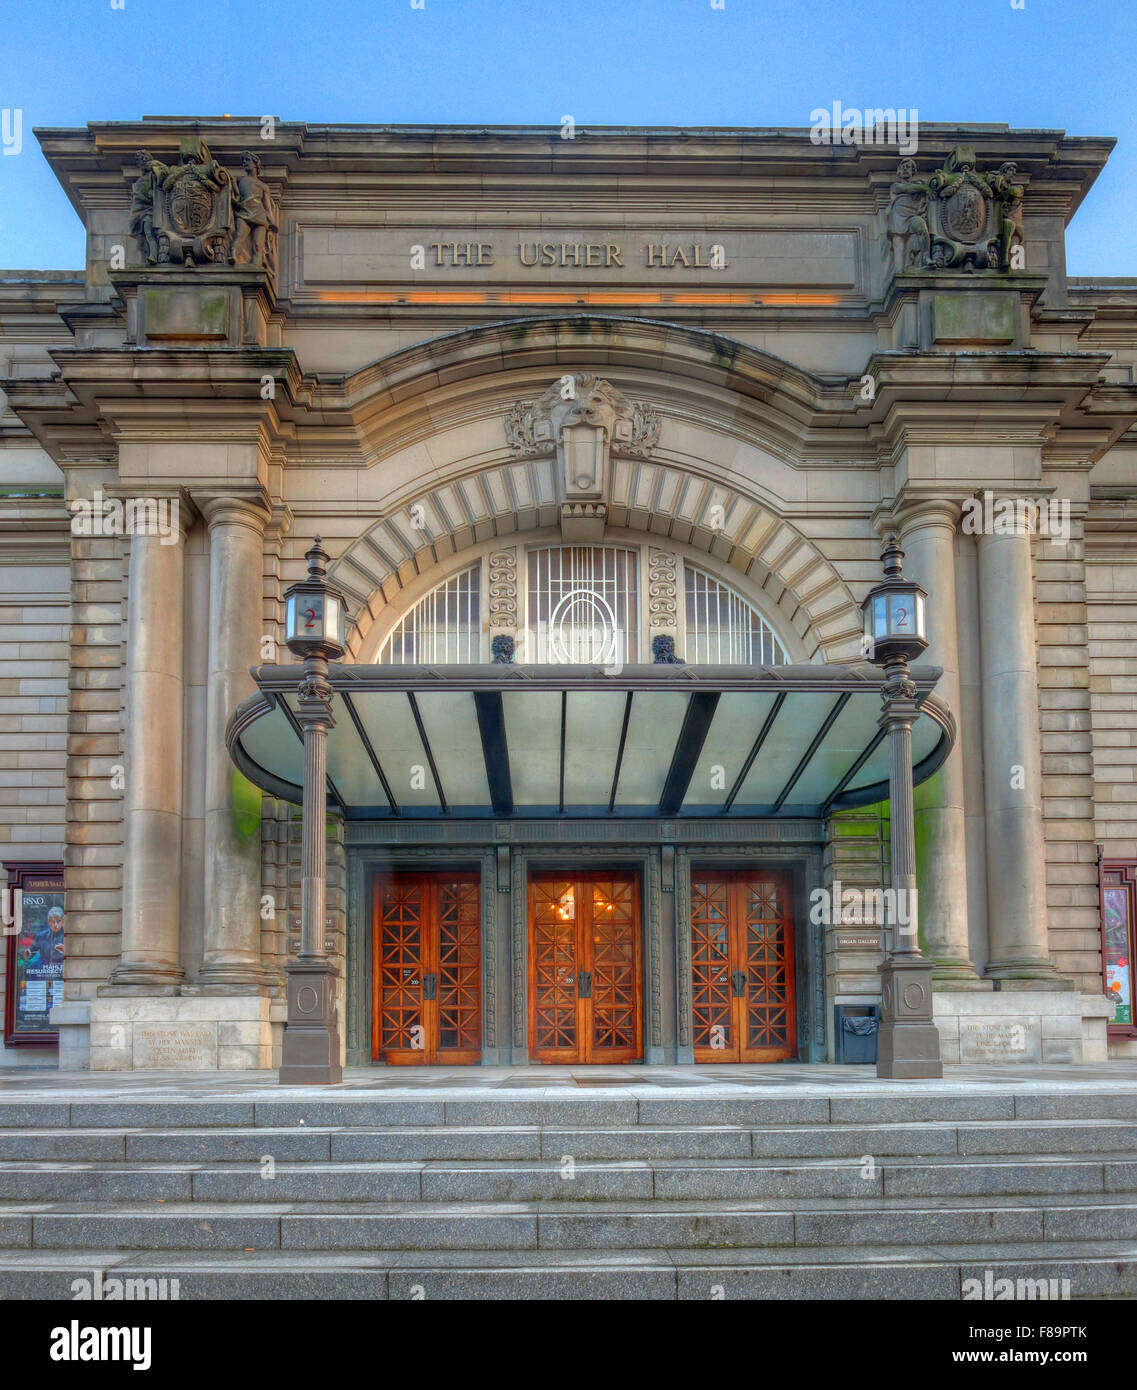 Huissier Hall, salle d'art et de théâtre, Lothian Road, Édimbourg, Écosse, Royaume-Uni, EH1 2EA Banque D'Images